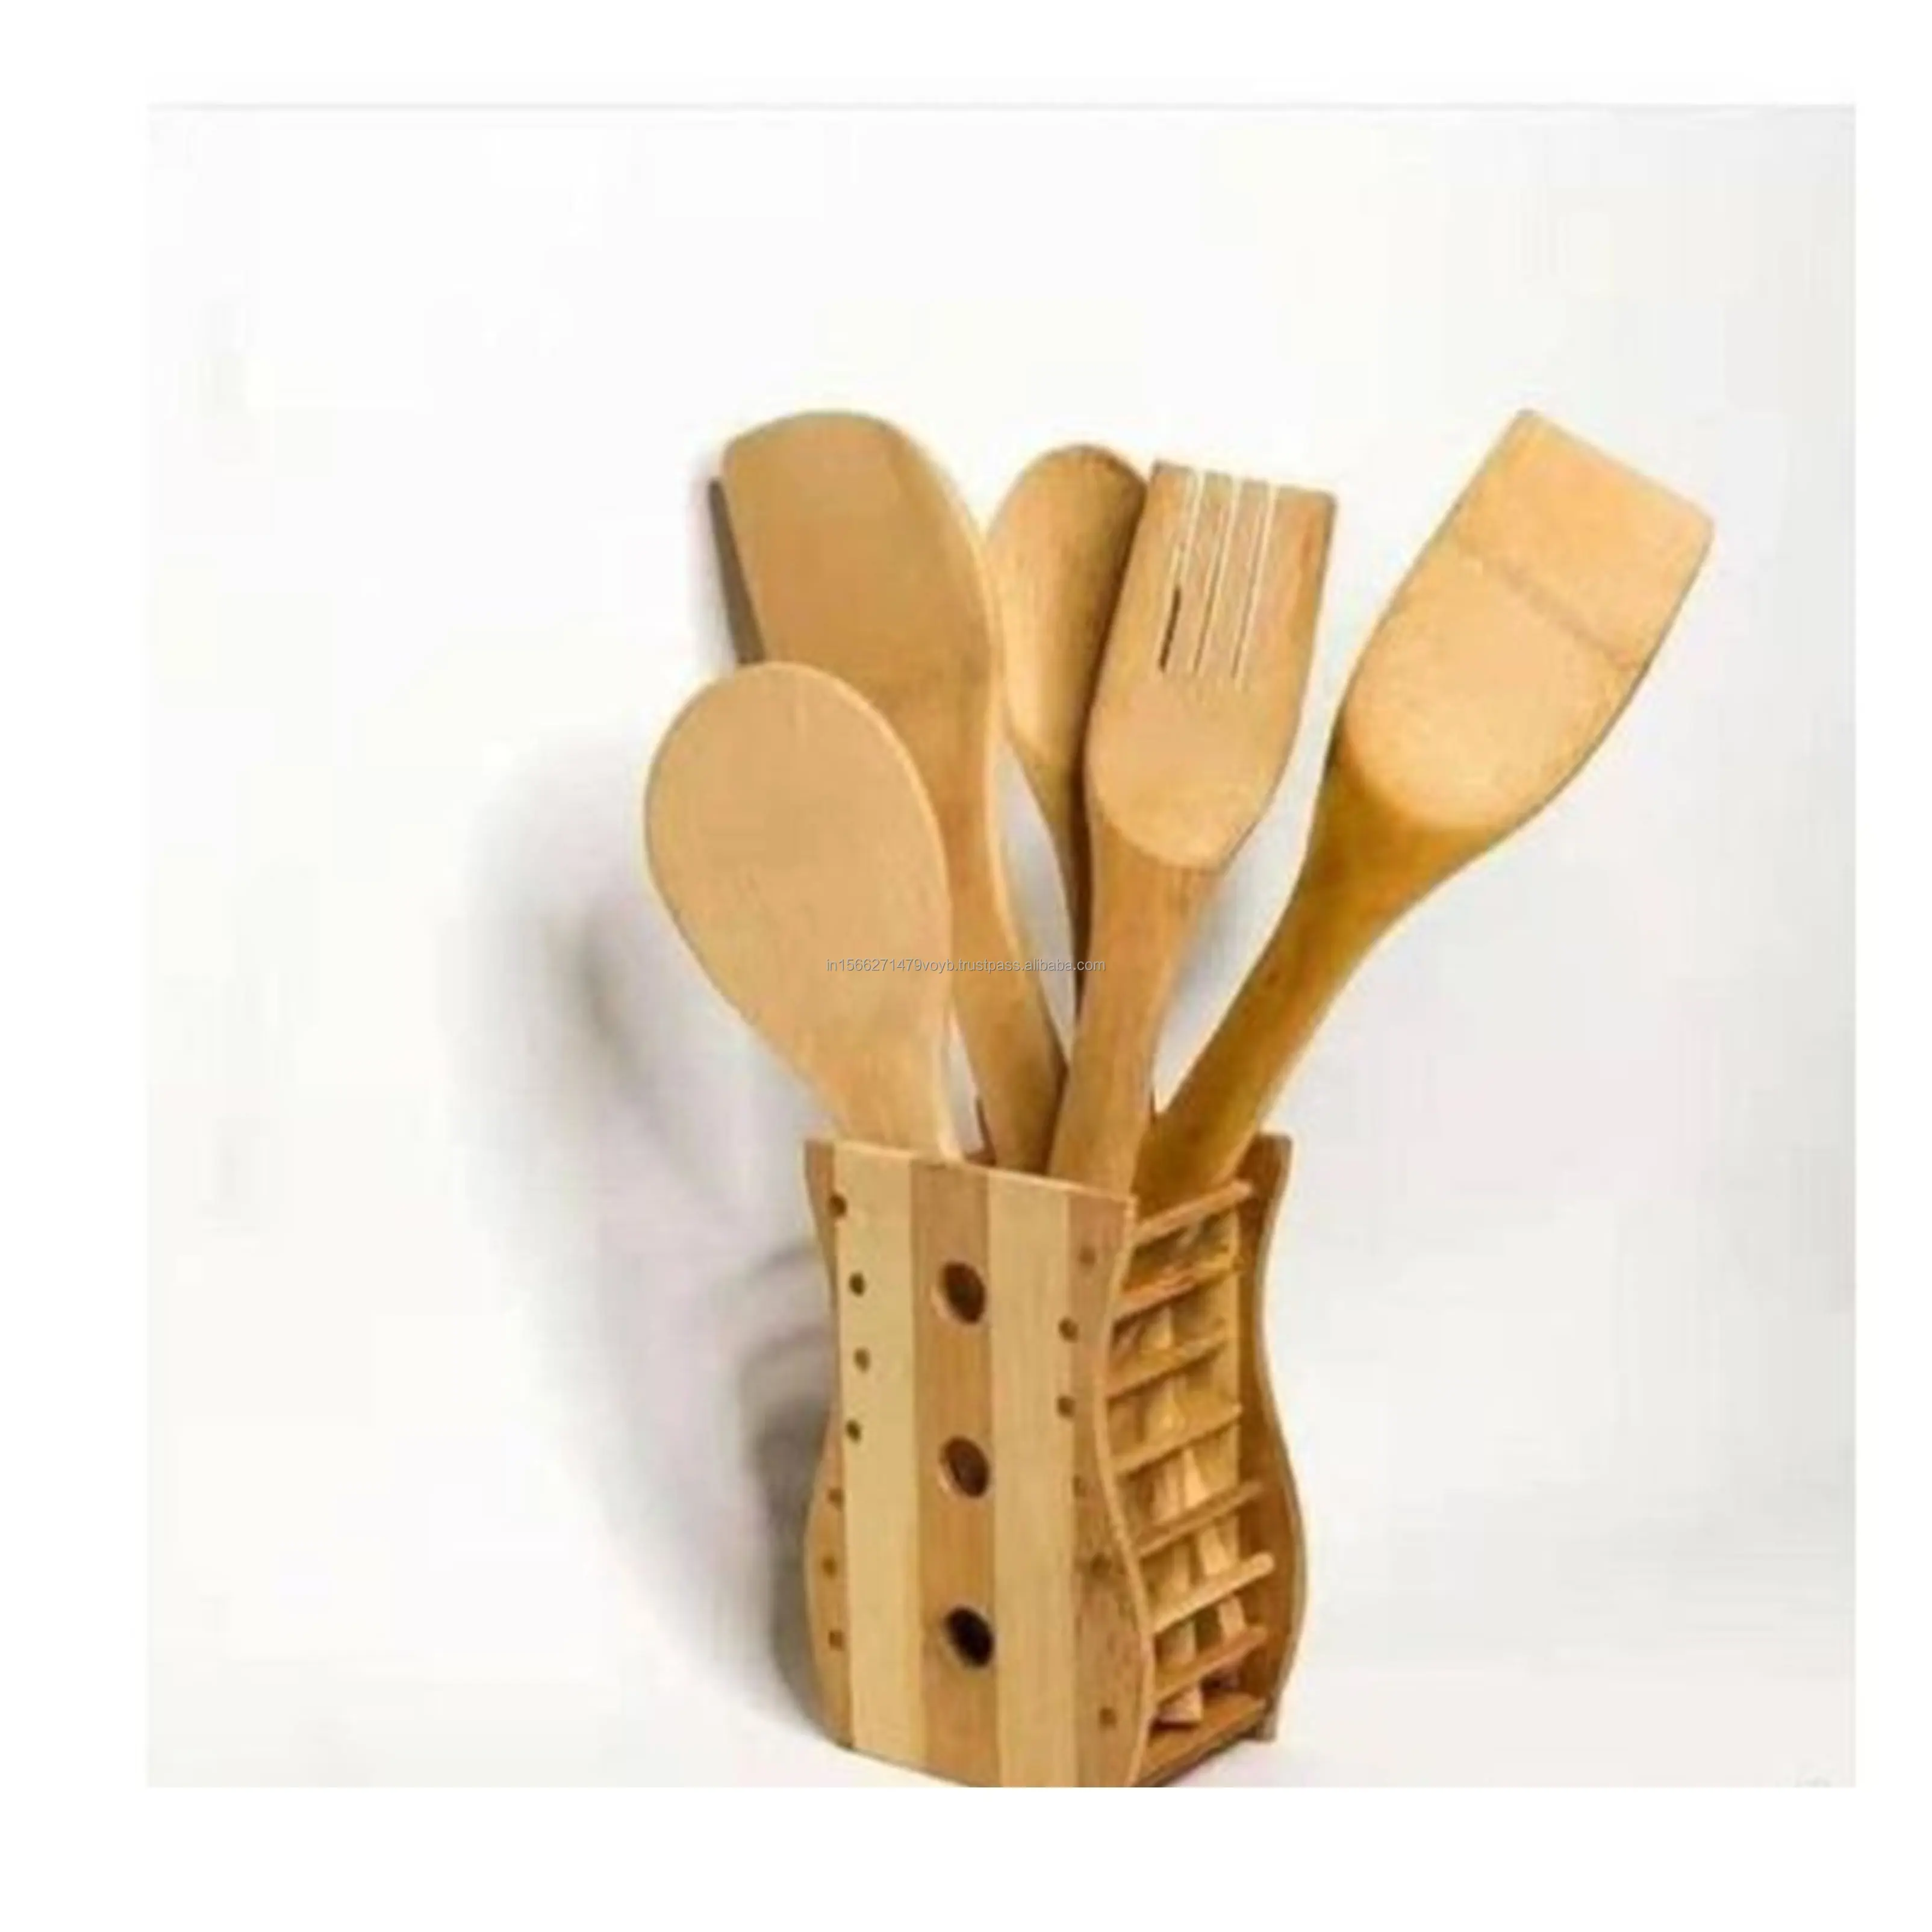 Cucharas de cocina de madera más vendidas Jumia Premium Juego de utensilios de cocina de madera Cuchara hecha a mano hecha en la India